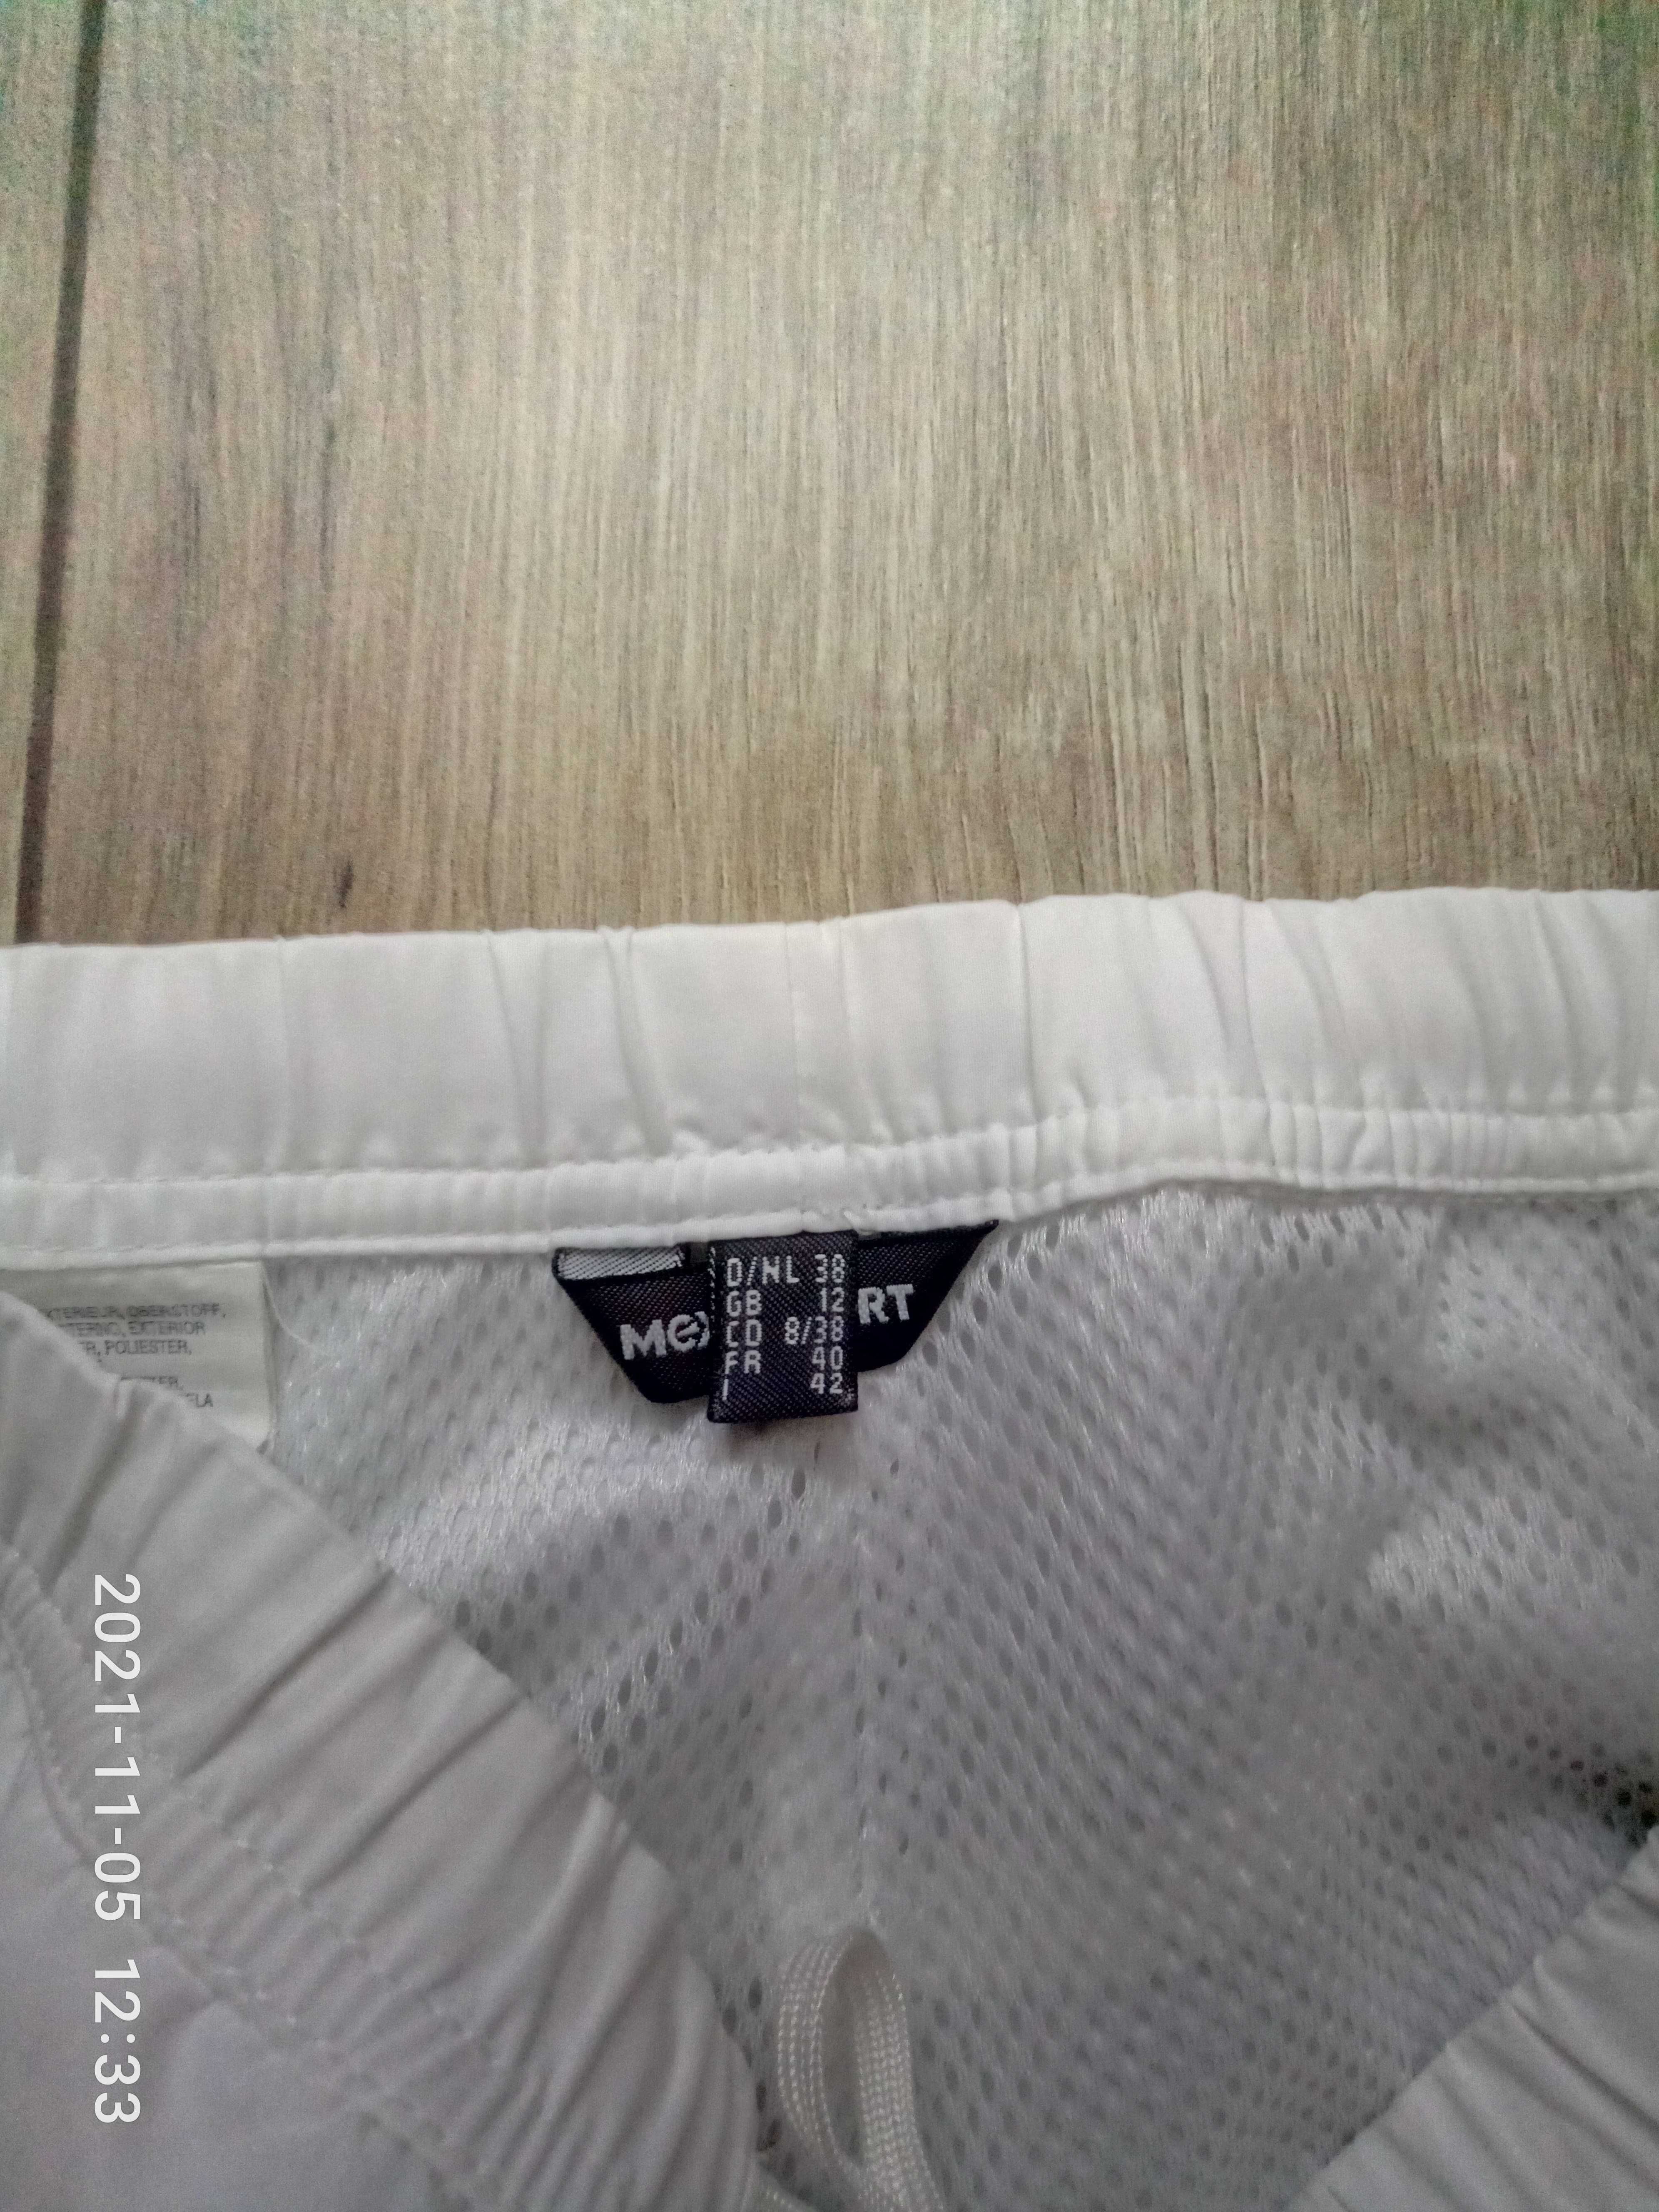 Спортивные  женские брюки Mexxsport р.42-44  белого  цвета.